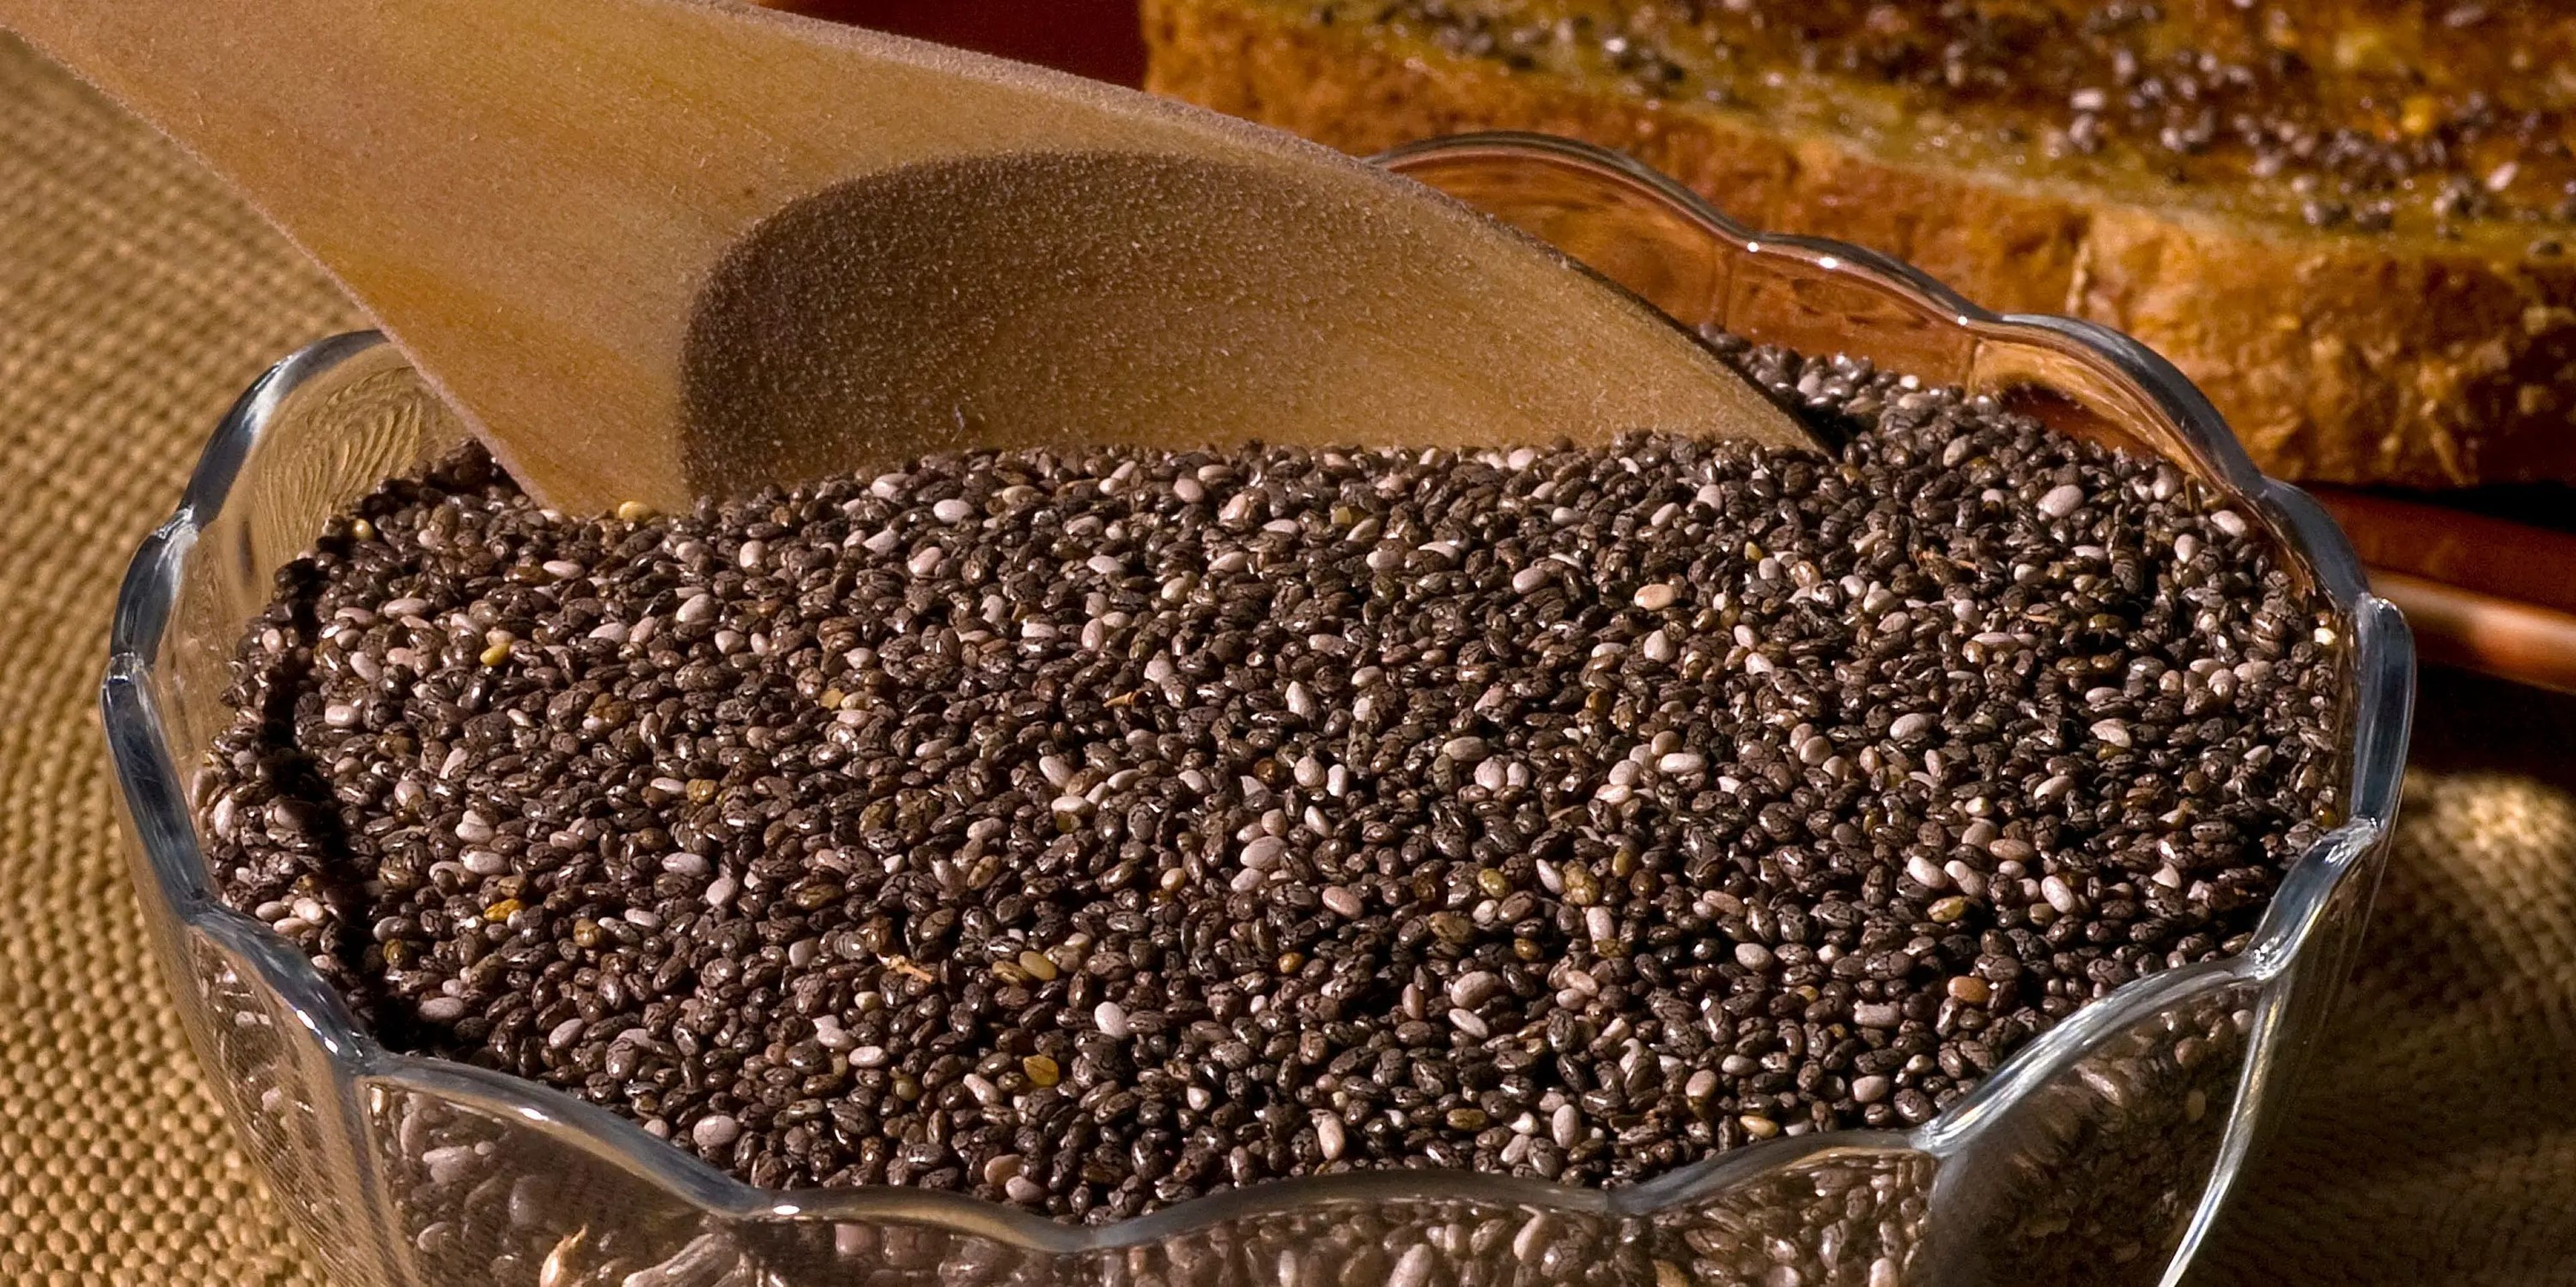 Las semillas de chía son ricas en minerales.